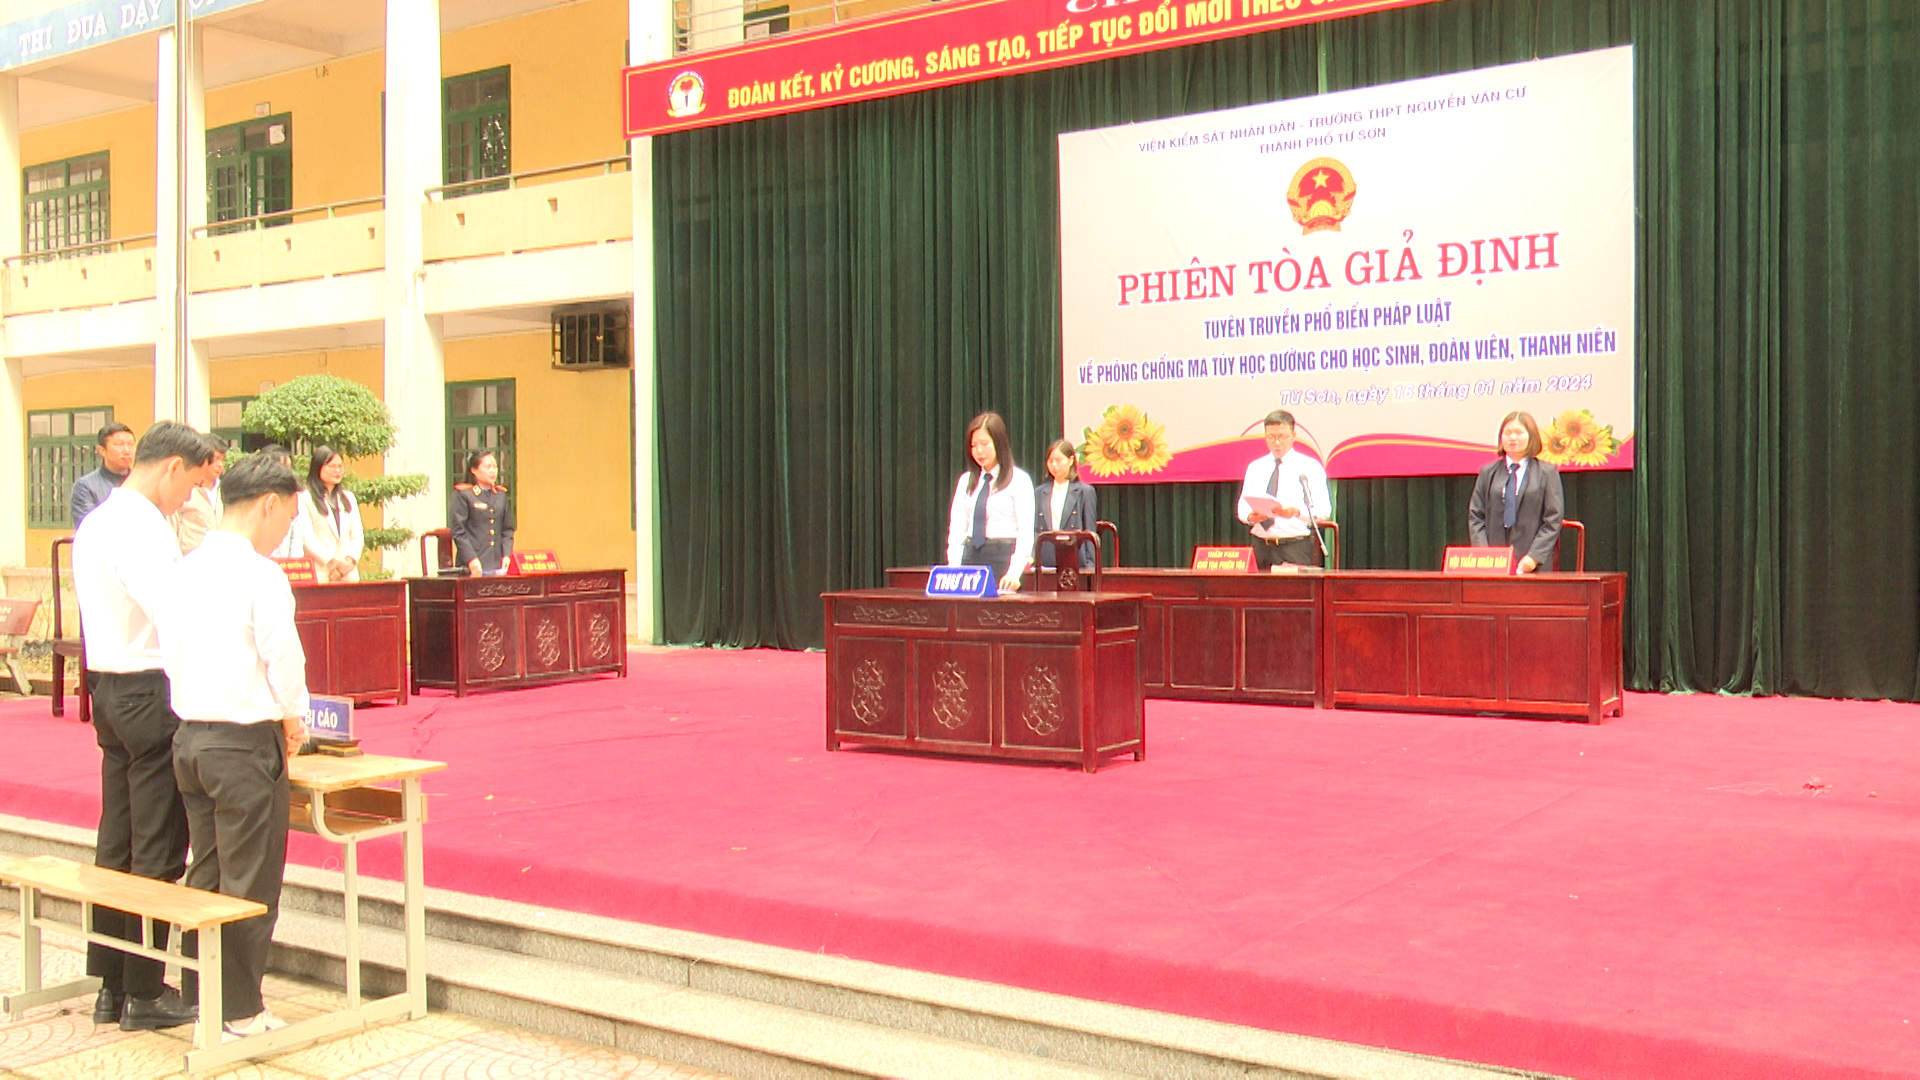 Phiên tòa giả định tuyên truyền phổ biến pháp luật về phòng chống ma túy học đường tại trường THPT Nguyễn Văn Cừ